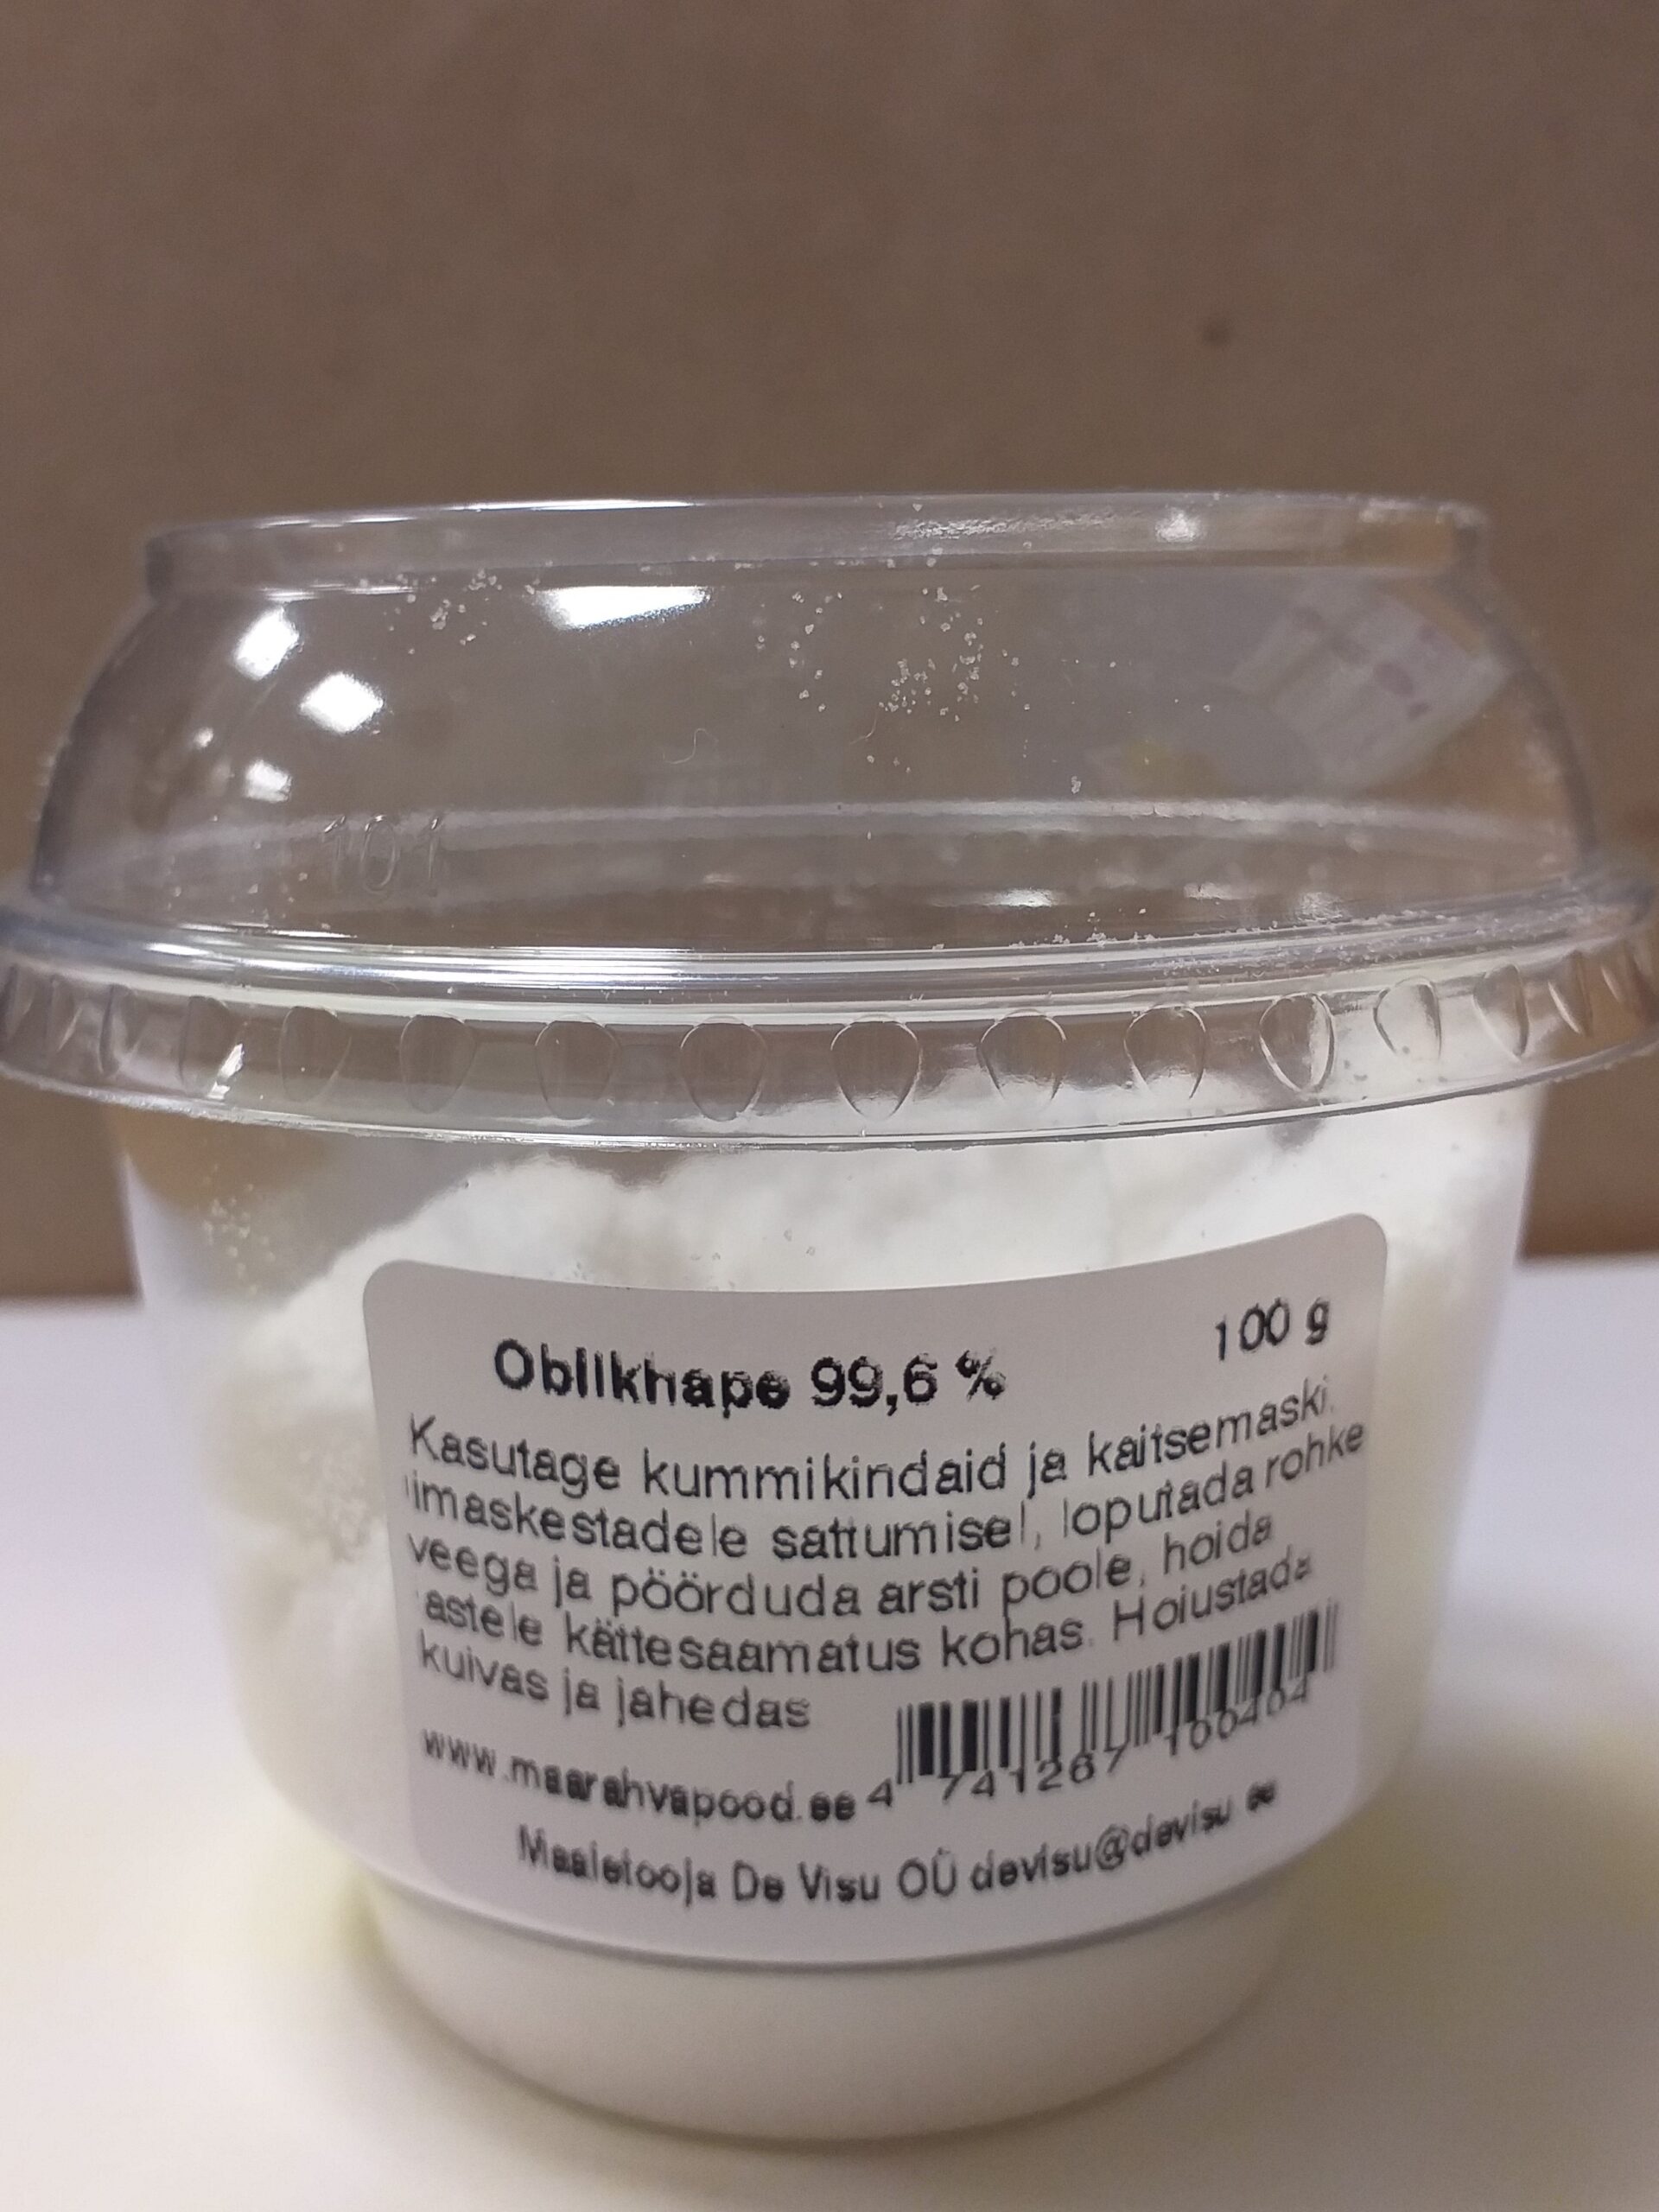 Oblikhape 99,6% 100 g